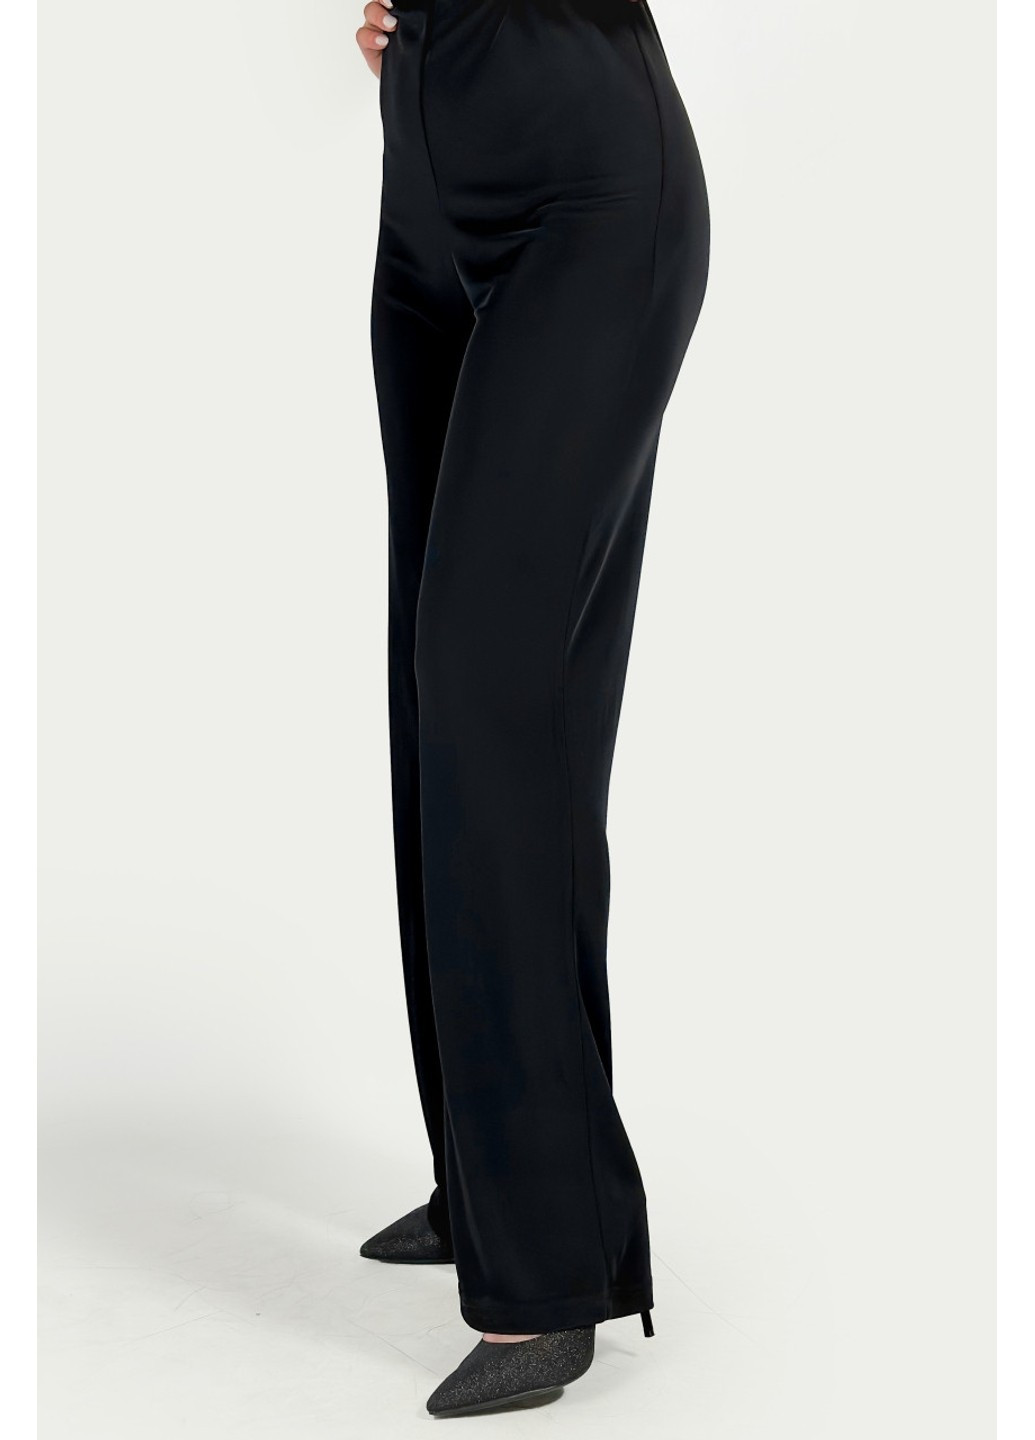 Комбінезон 2972/202/800 Zara комбінезон-брюки однотонний чорний вечірній